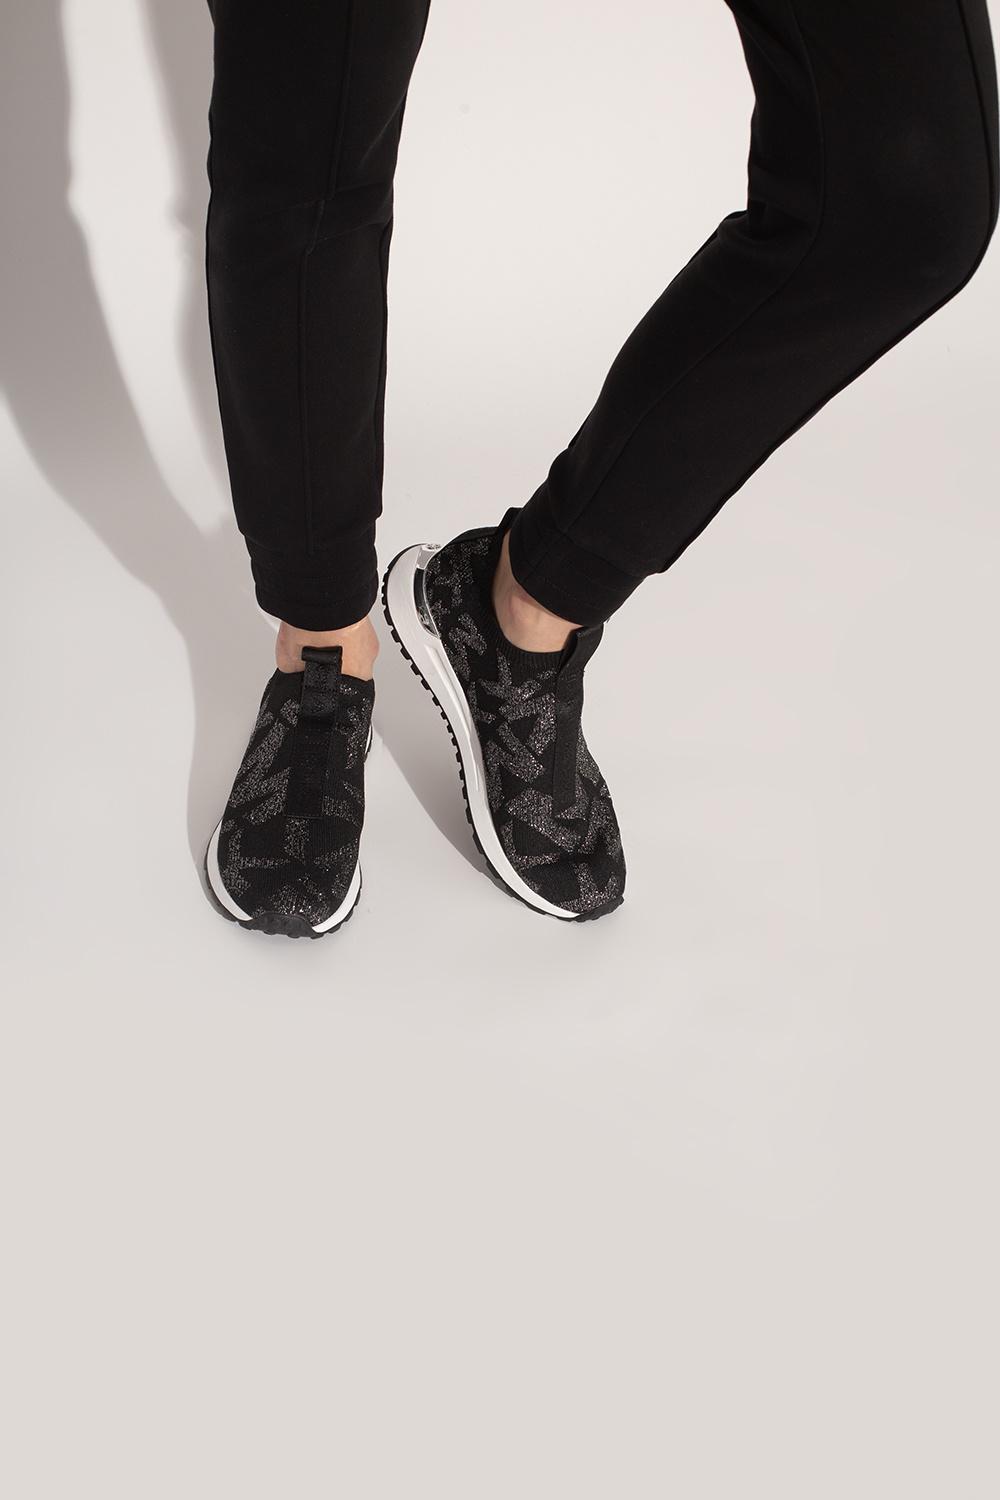 Michael Kors 'bodie' Slip-on Sneakers in Black | Lyst